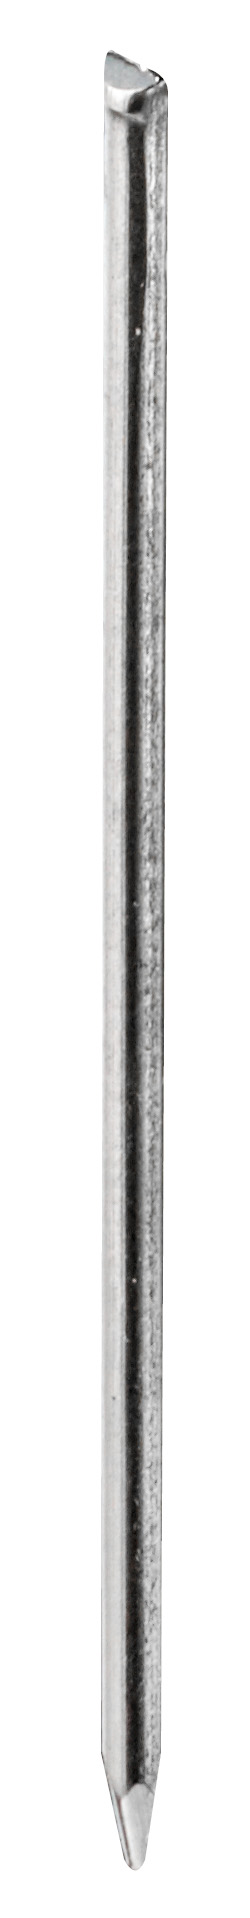 HSI Goldleistenstifte gehärtet 32 mm HP50 (50 Stück) (PG I)